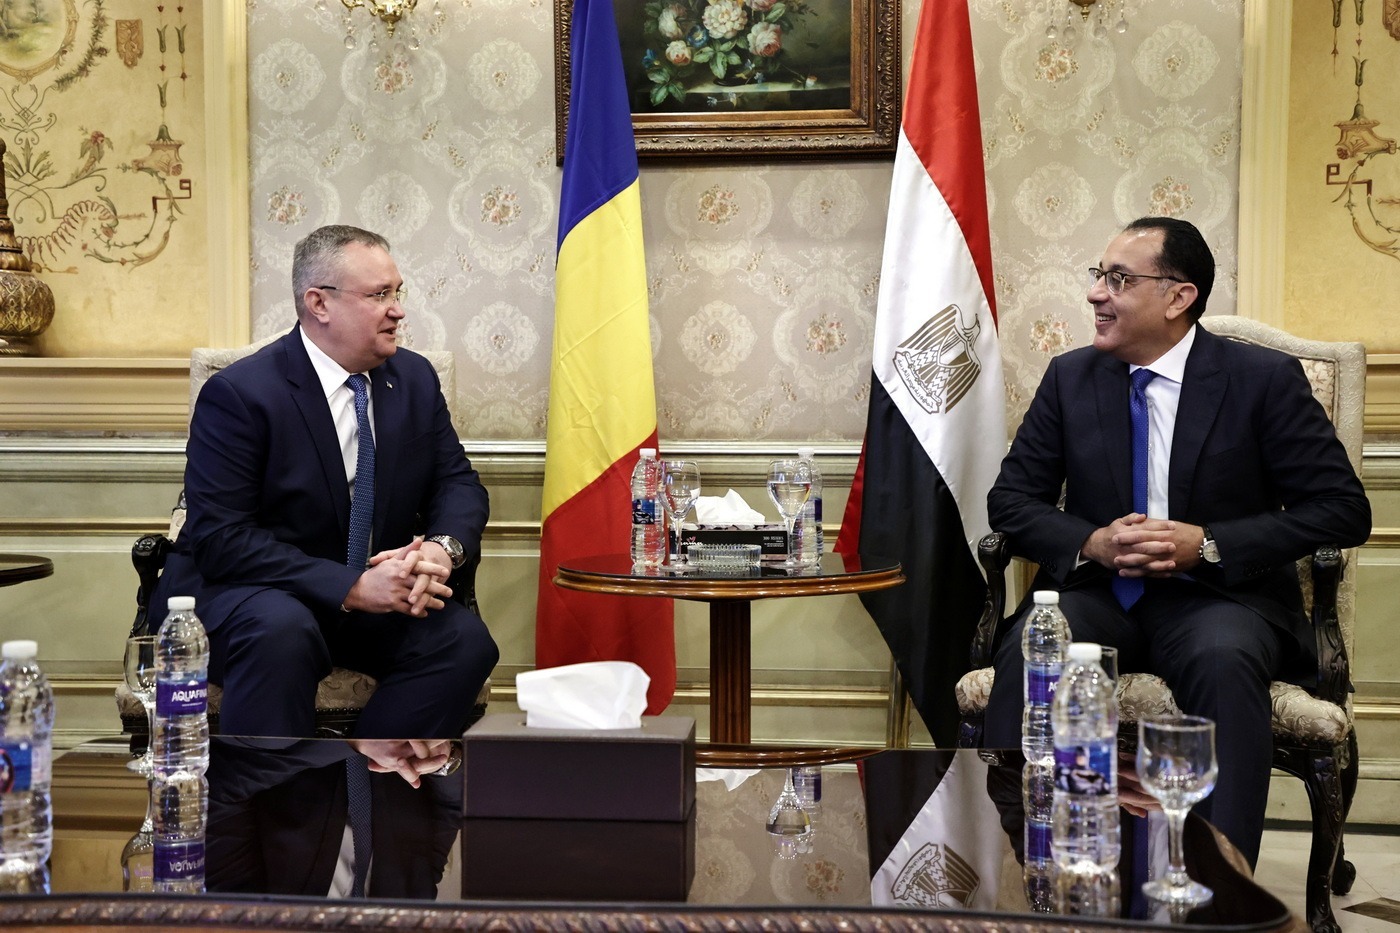 Premierul Nicolae Ciucă: România valorifică oportunităţile excelente oferite de cooperarea economică şi politică cu Egiptul şi le concretizează în proiecte de dezvoltare menite să aducă prosperitate ţărilor noastre